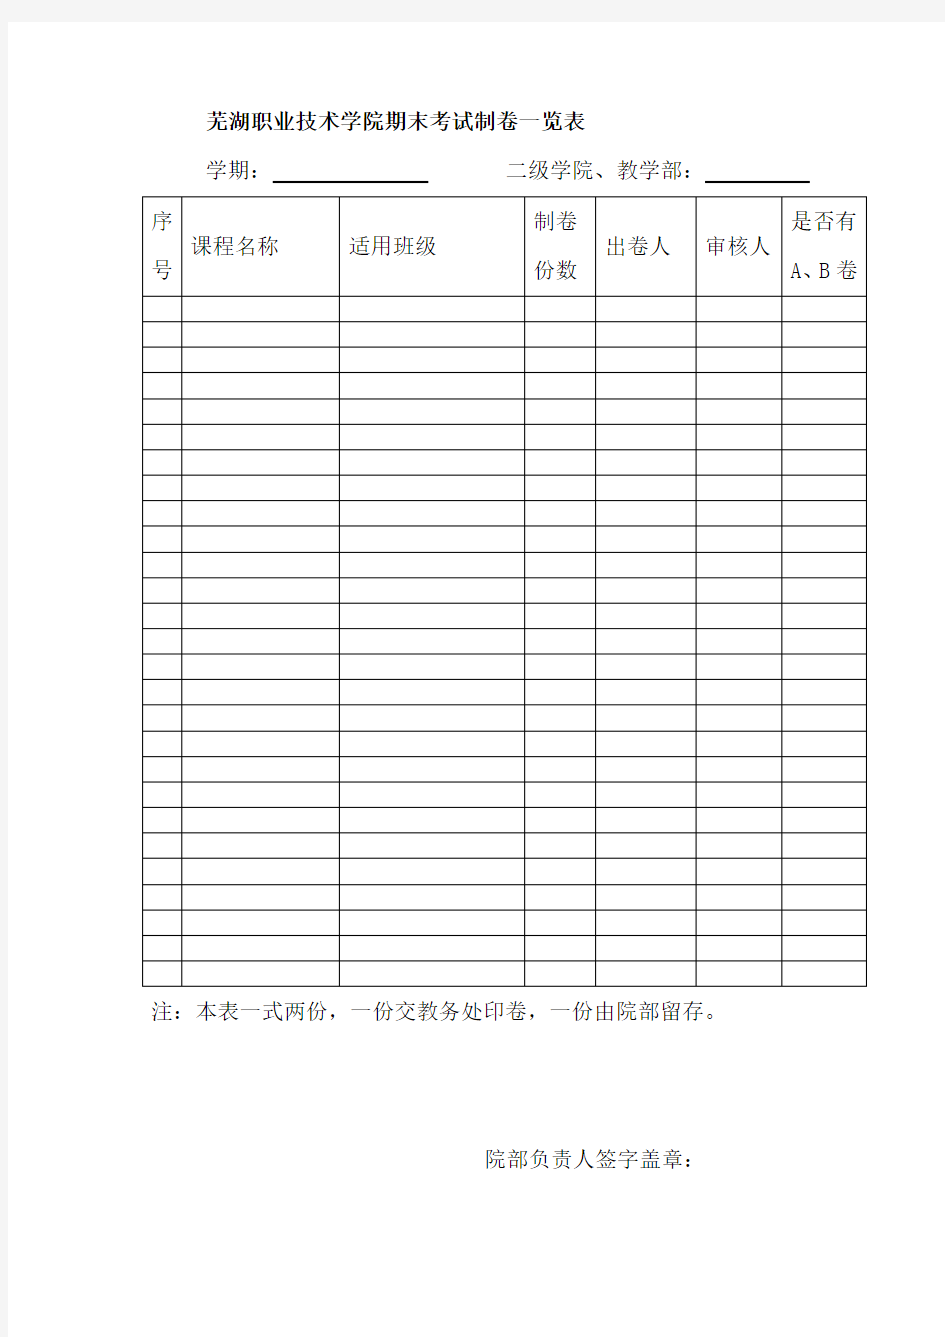 芜湖职业技术学院期末考试制卷一览表